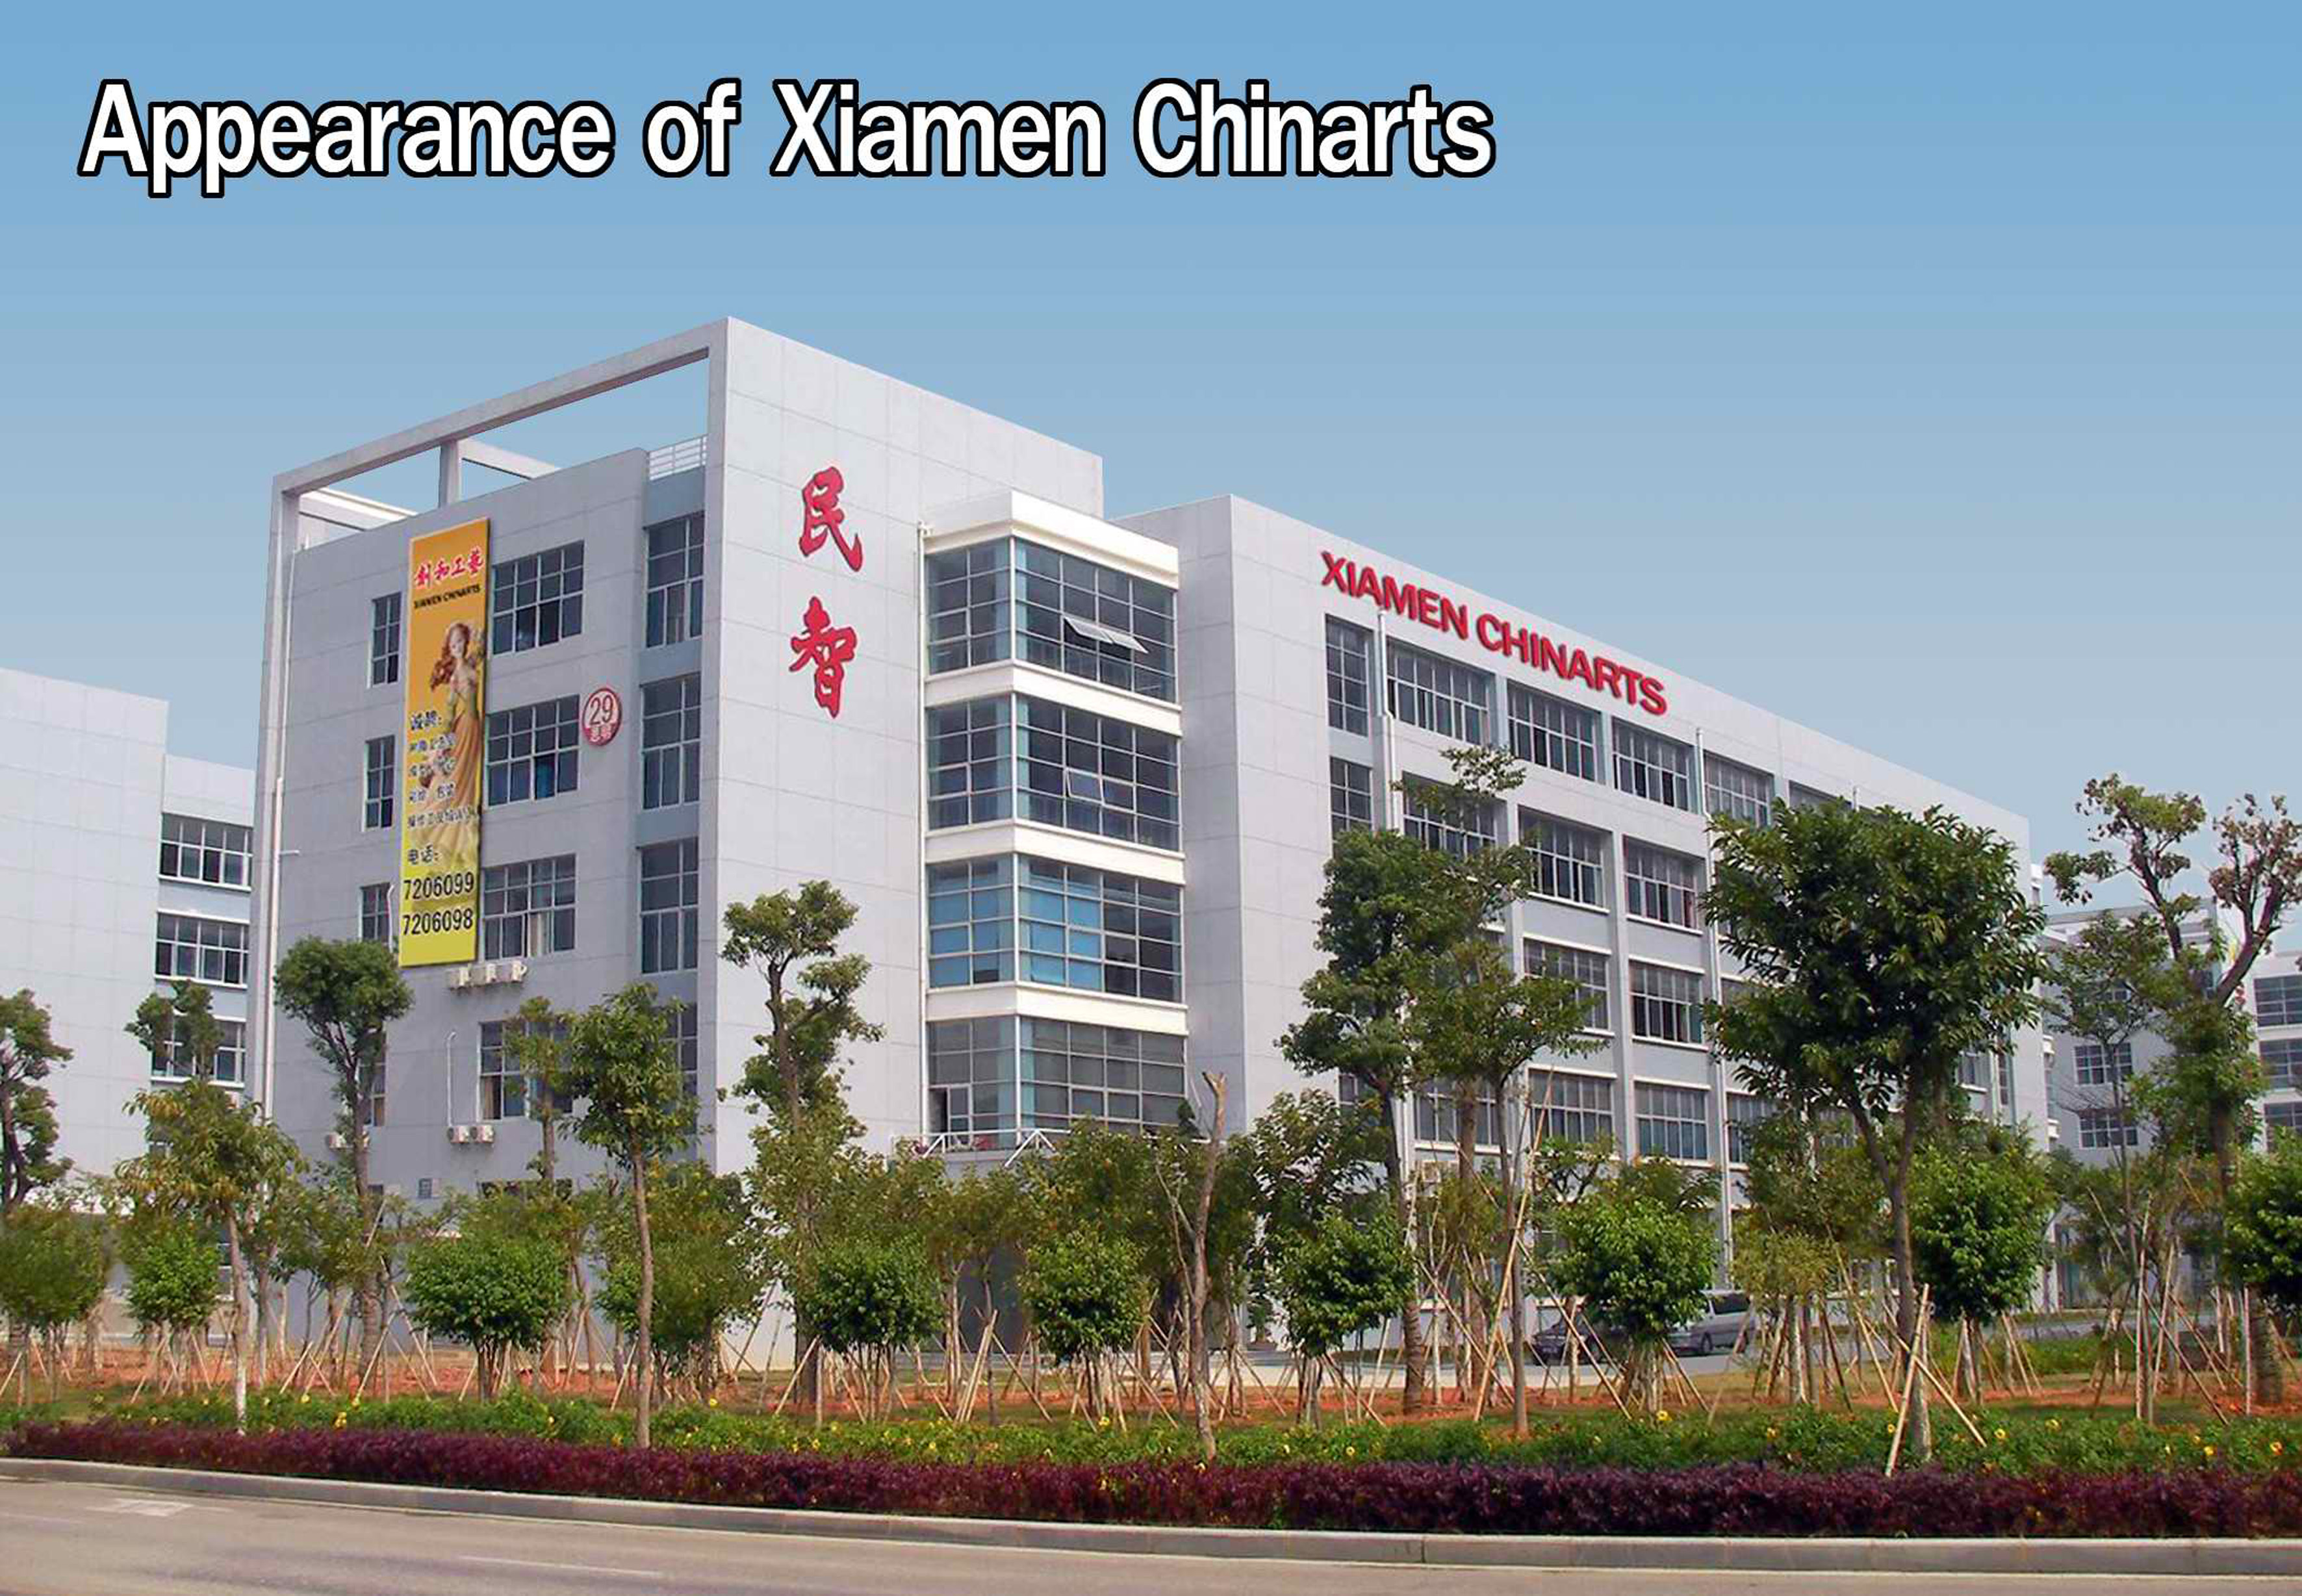 Xiamen Chinarts Επιχειρήσεις Co., Ltd